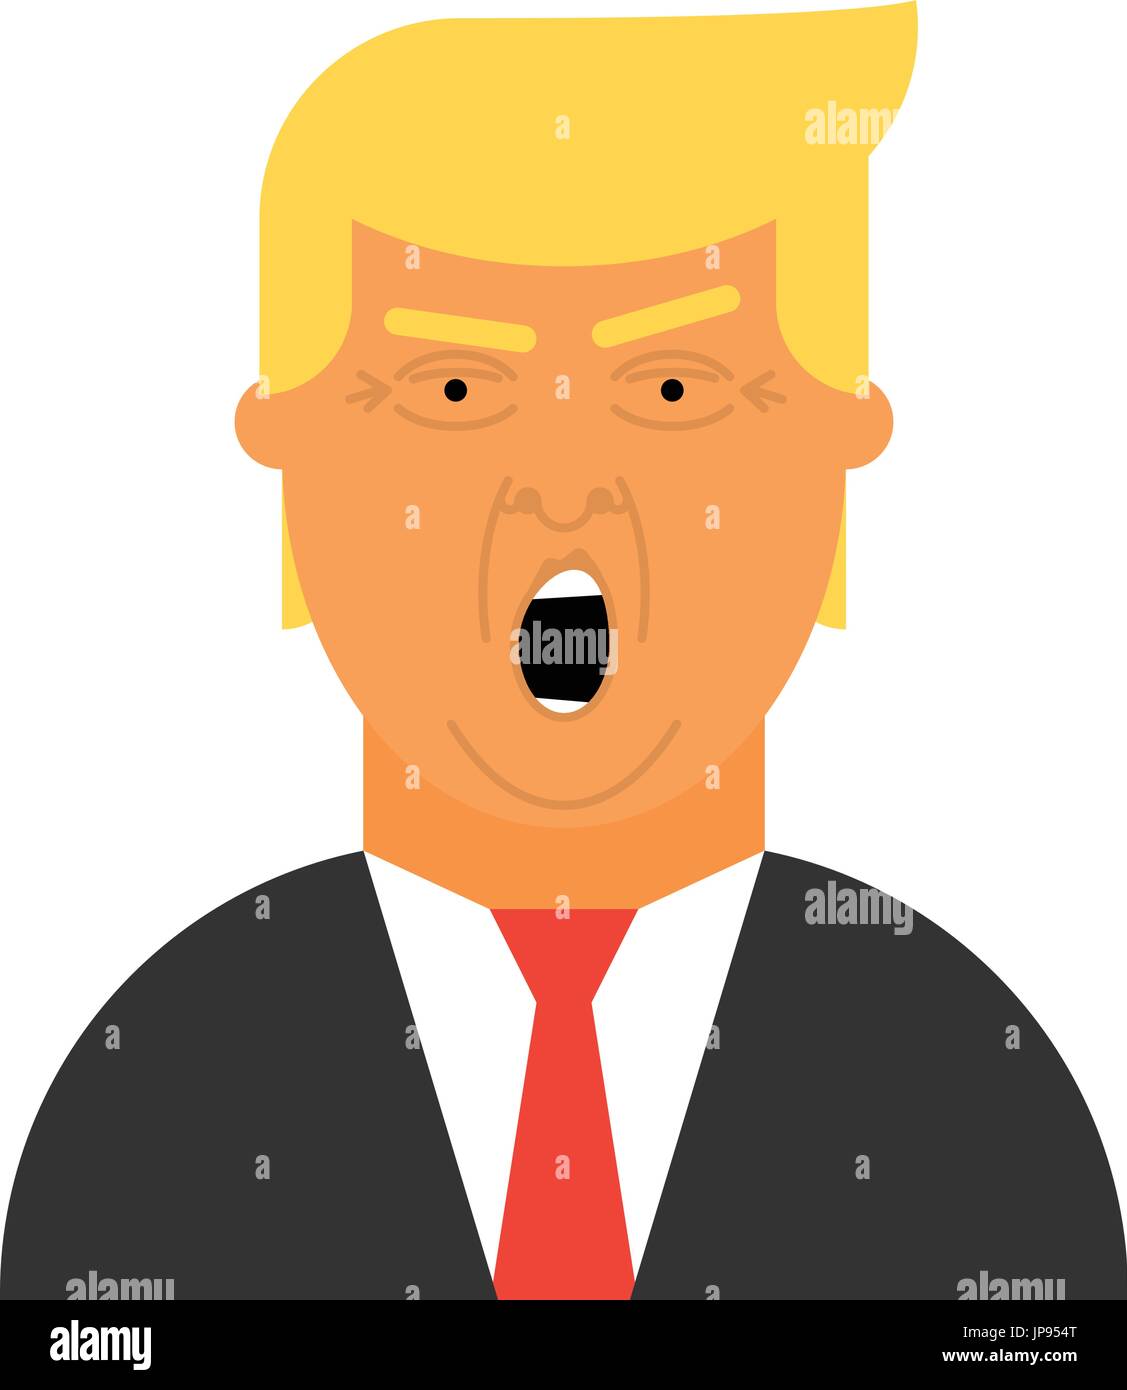 Donald Trump Vektor Icon. Flache Darstellung des Präsidenten der Vereinigten Staaten von Amerika. Stock Vektor